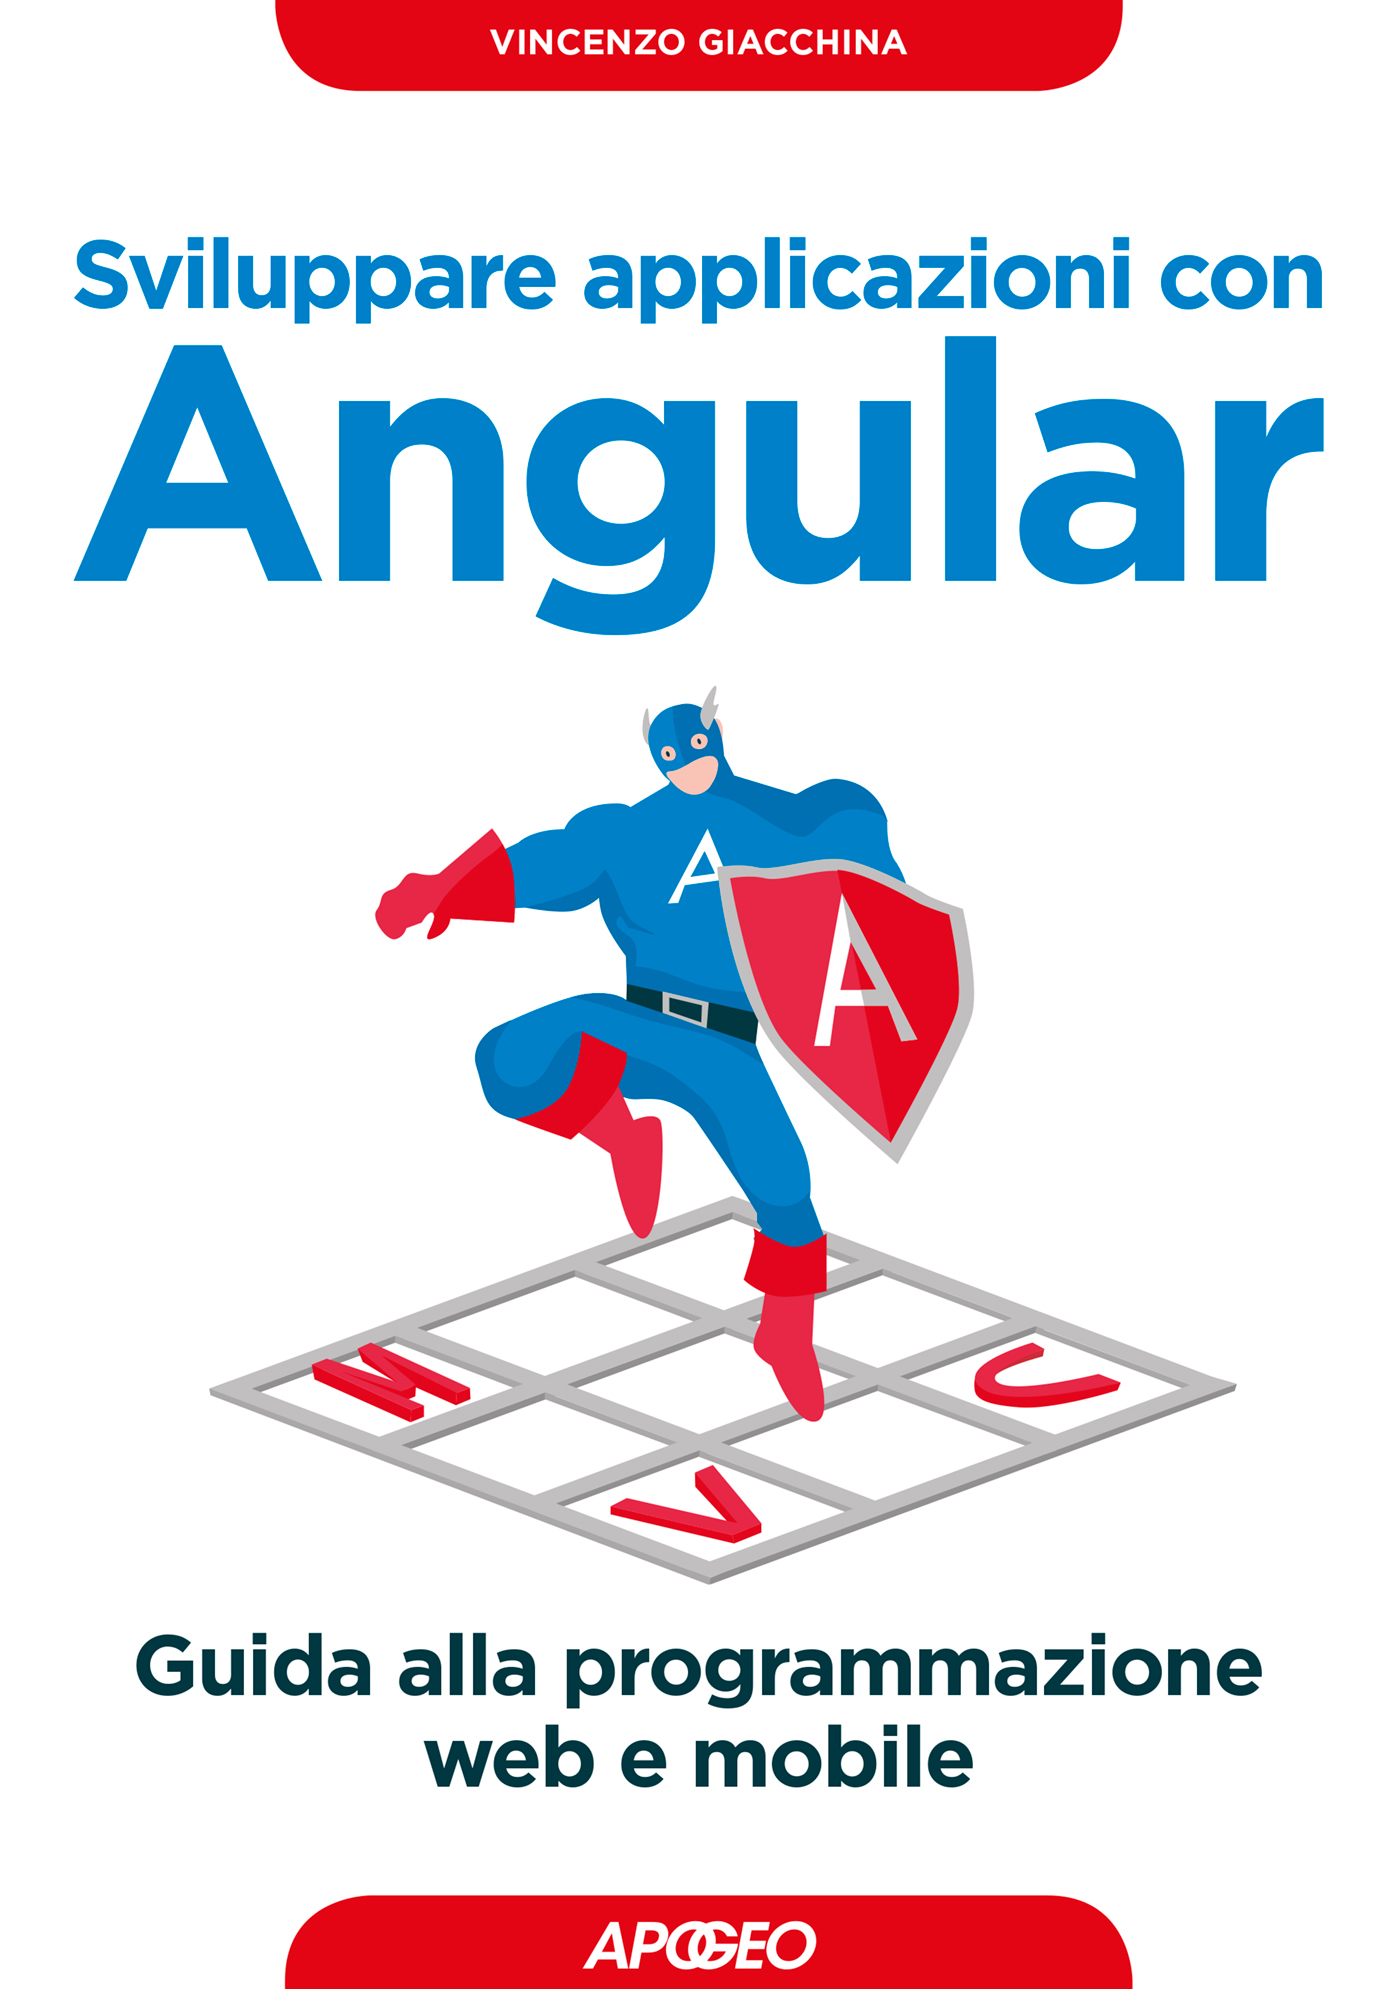 Sviluppare applicazioni con Angular